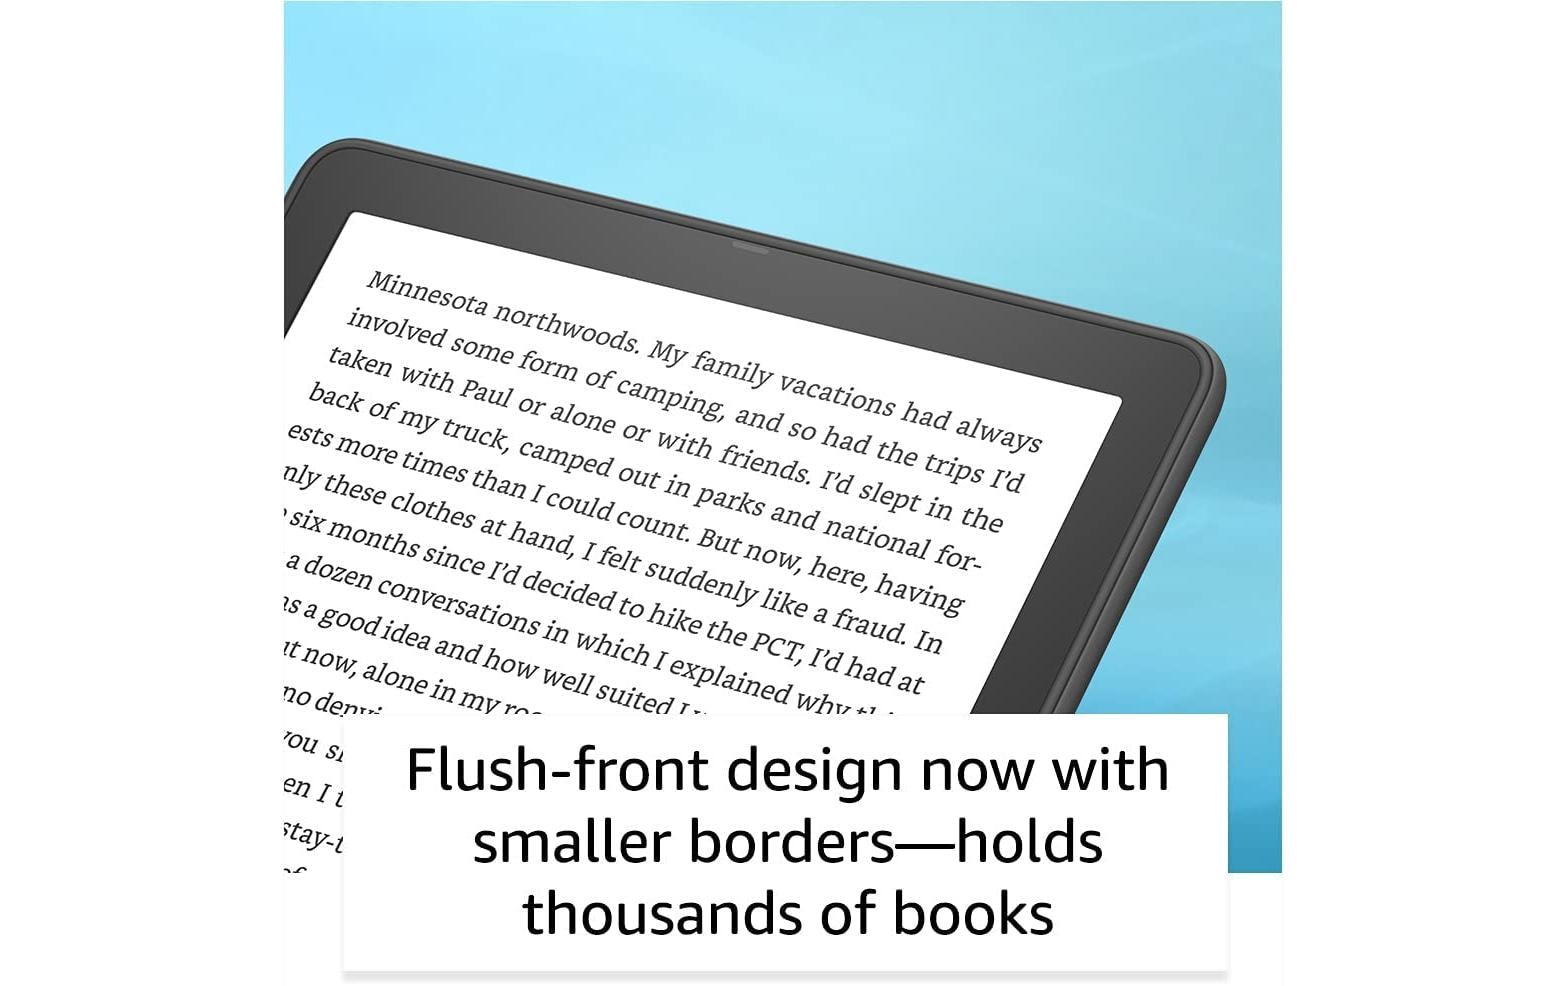 Amazon E-Book Reader Kindle Paperwhite 2021 32 GB Signature Edition